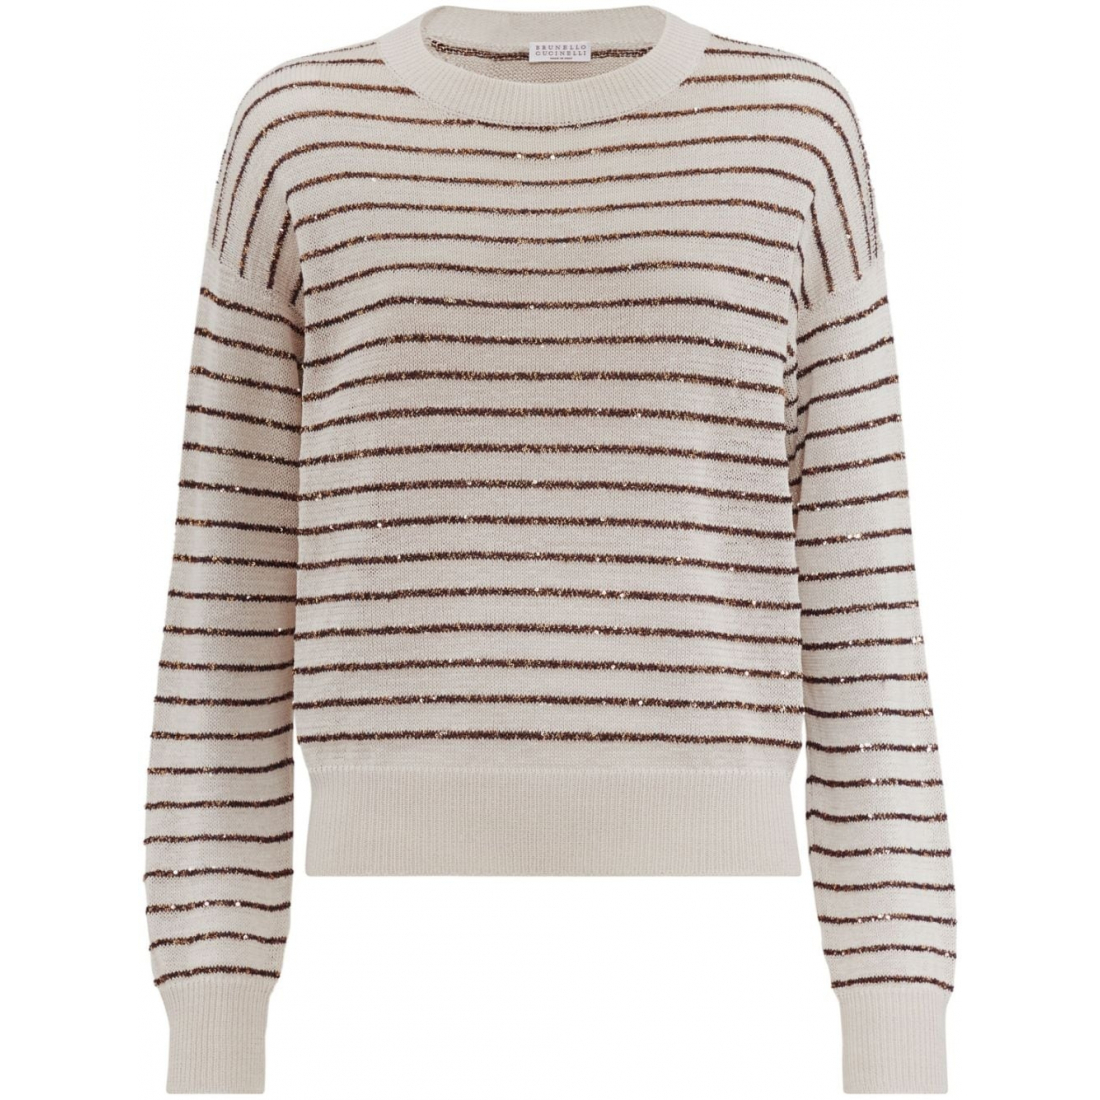 Women's 'Striped' Sweater